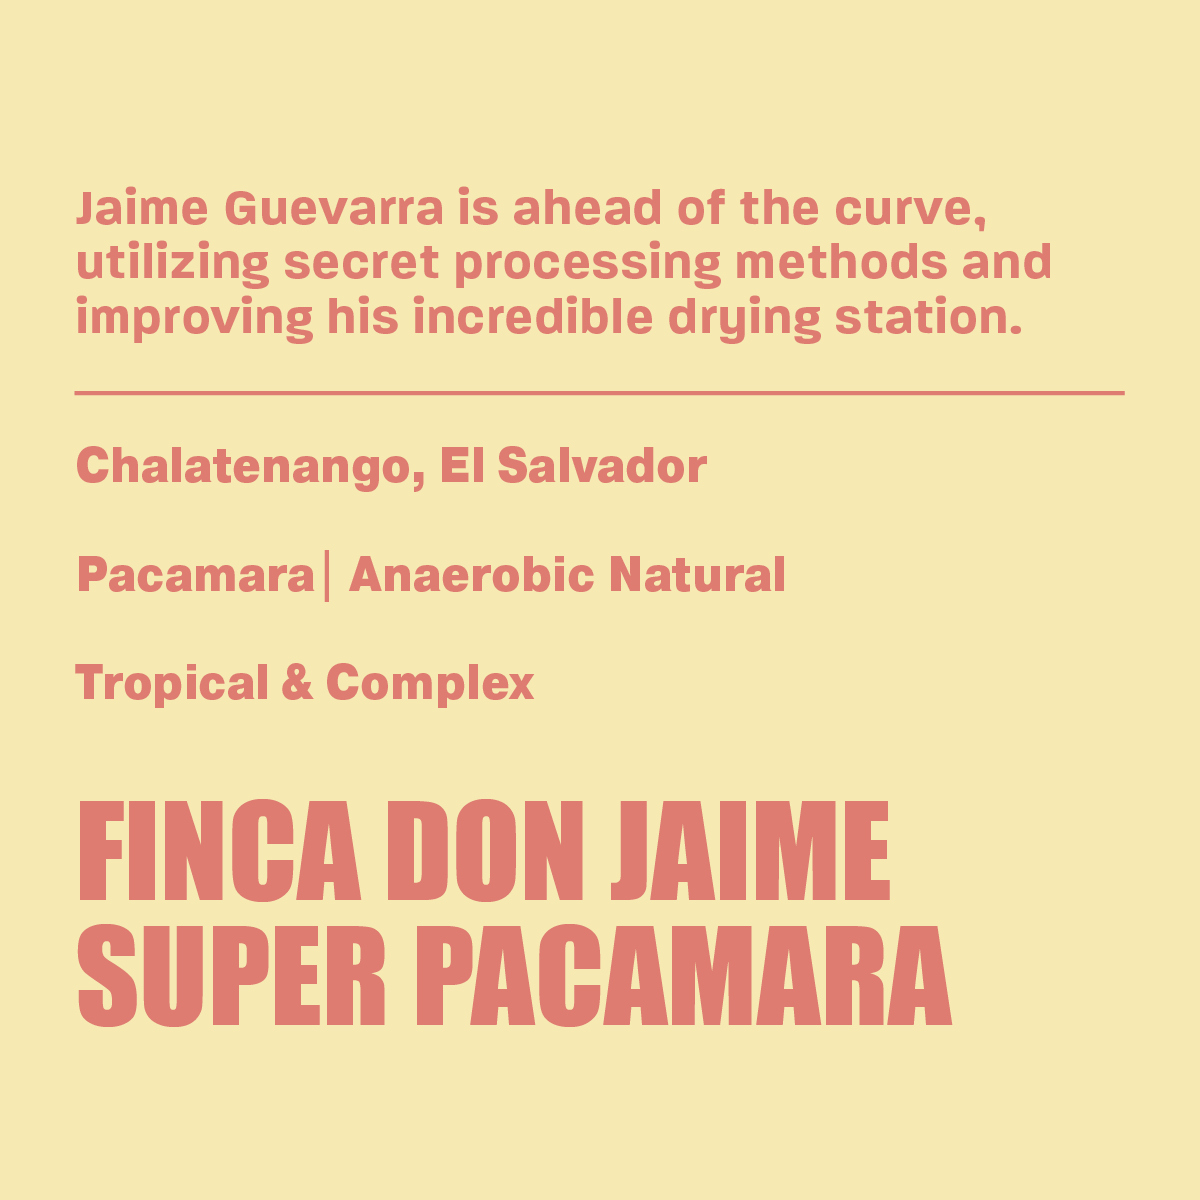 Don Jaime Super Pacamara